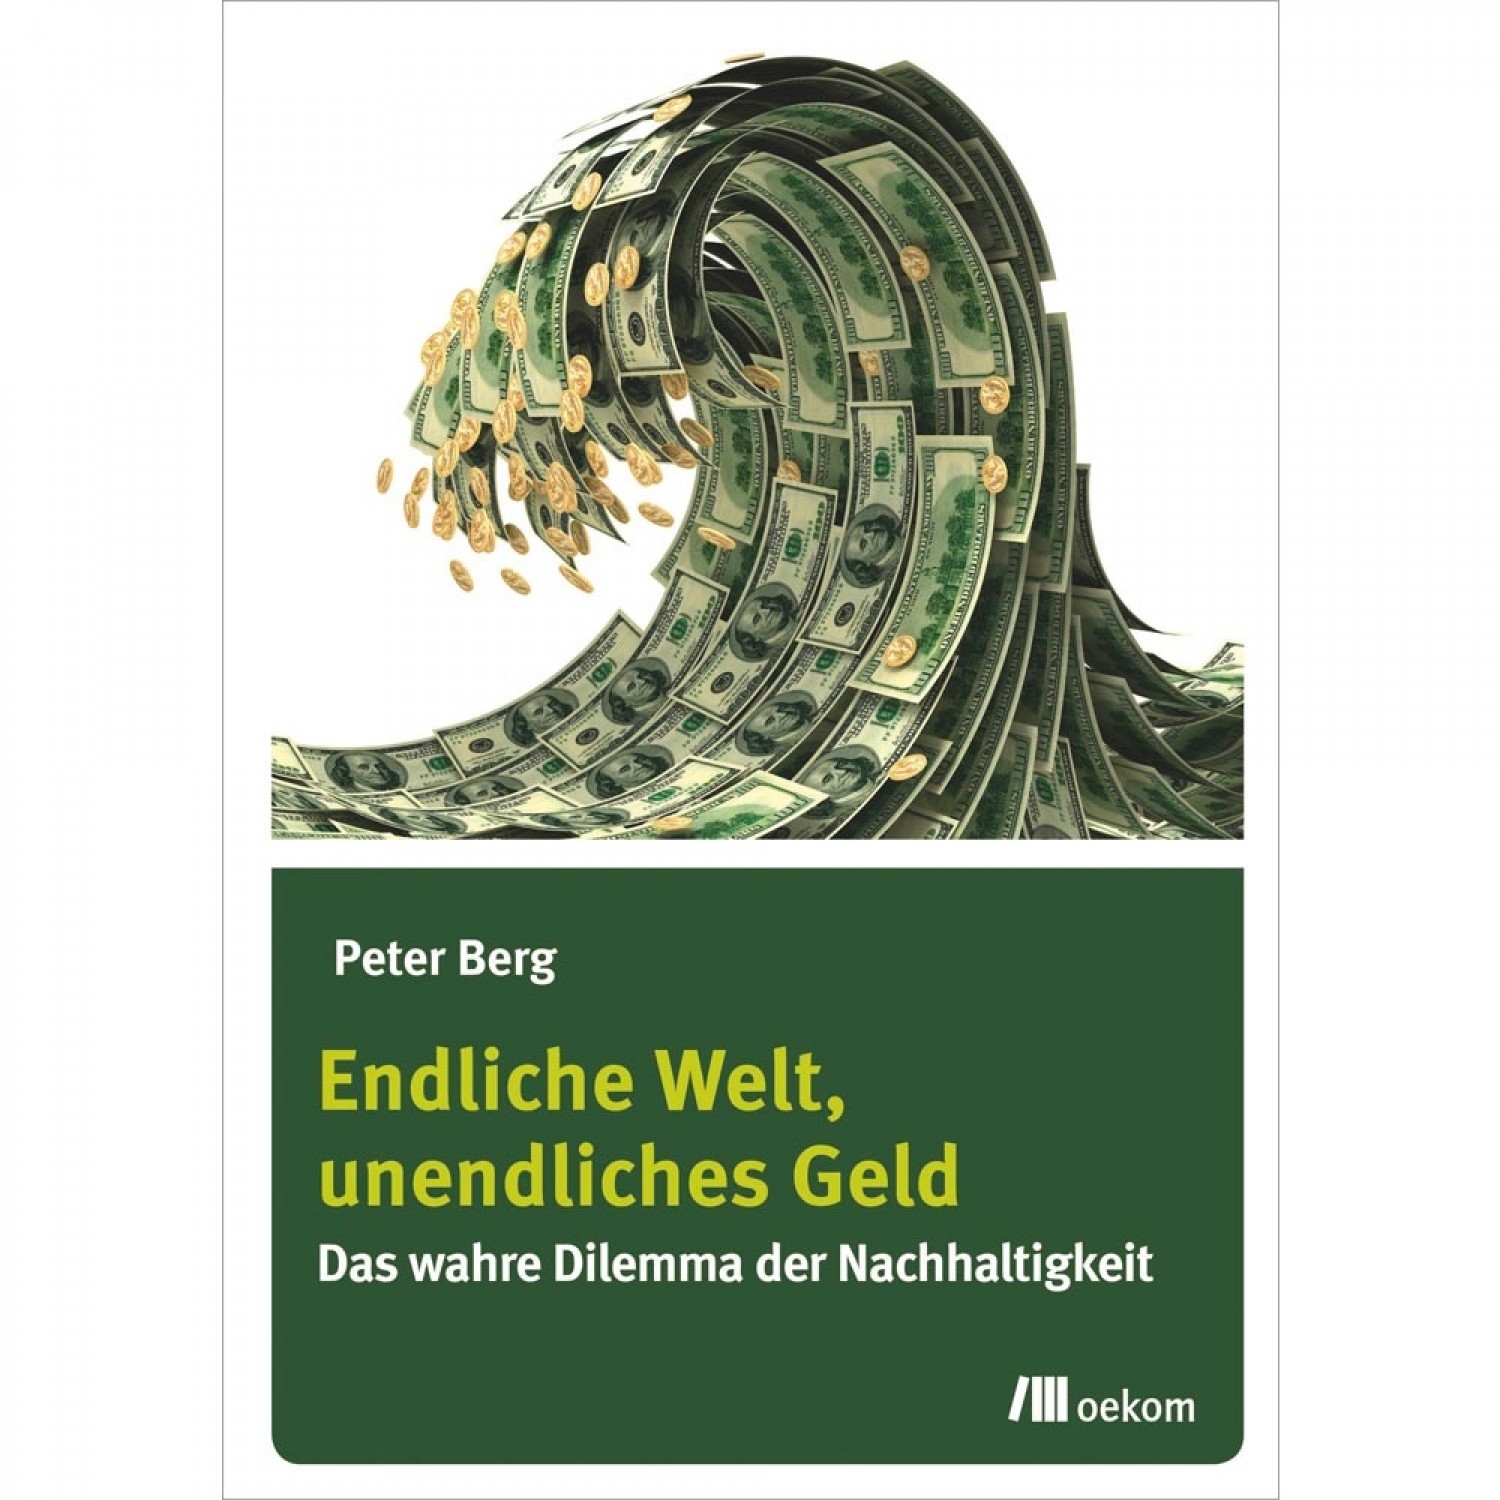 Endliche Welt, unendliches Geld - Peter Berg | oekom Verlag